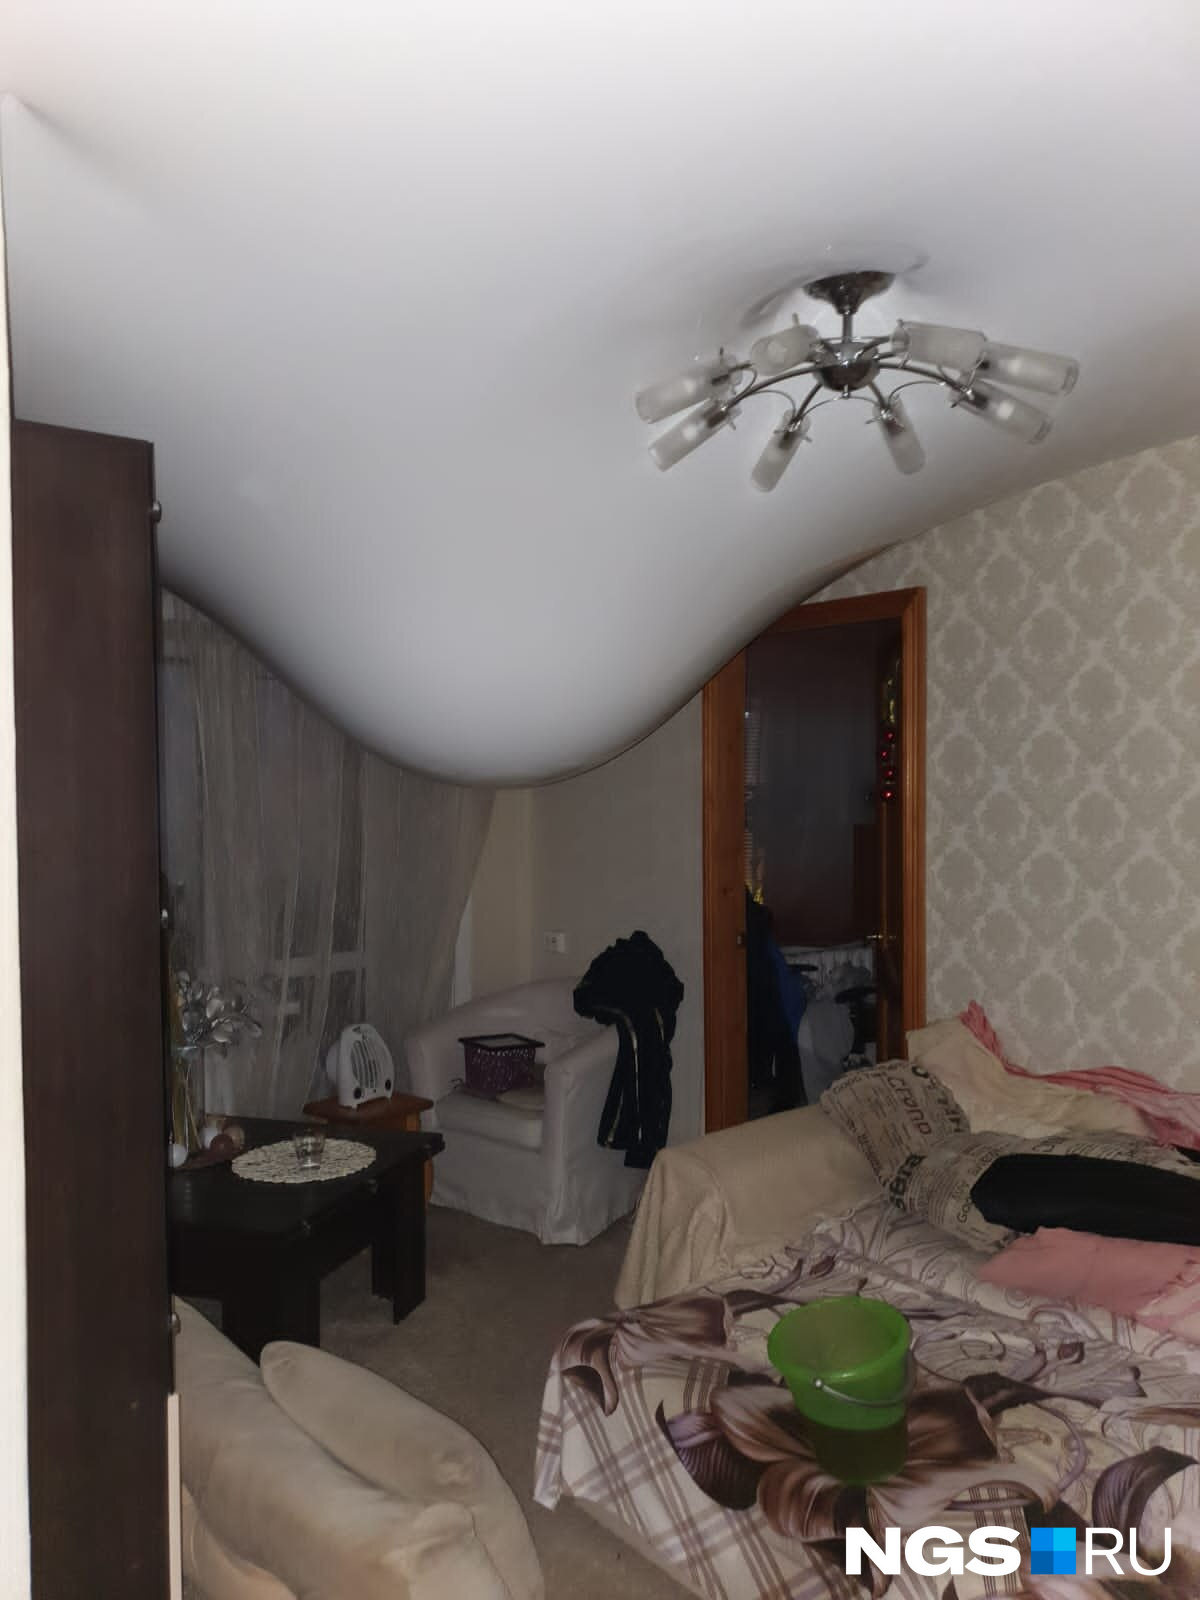 Соседей Дмитрия спас натяжной потолок: без него квартире в буквальном смысле пришел бы конец